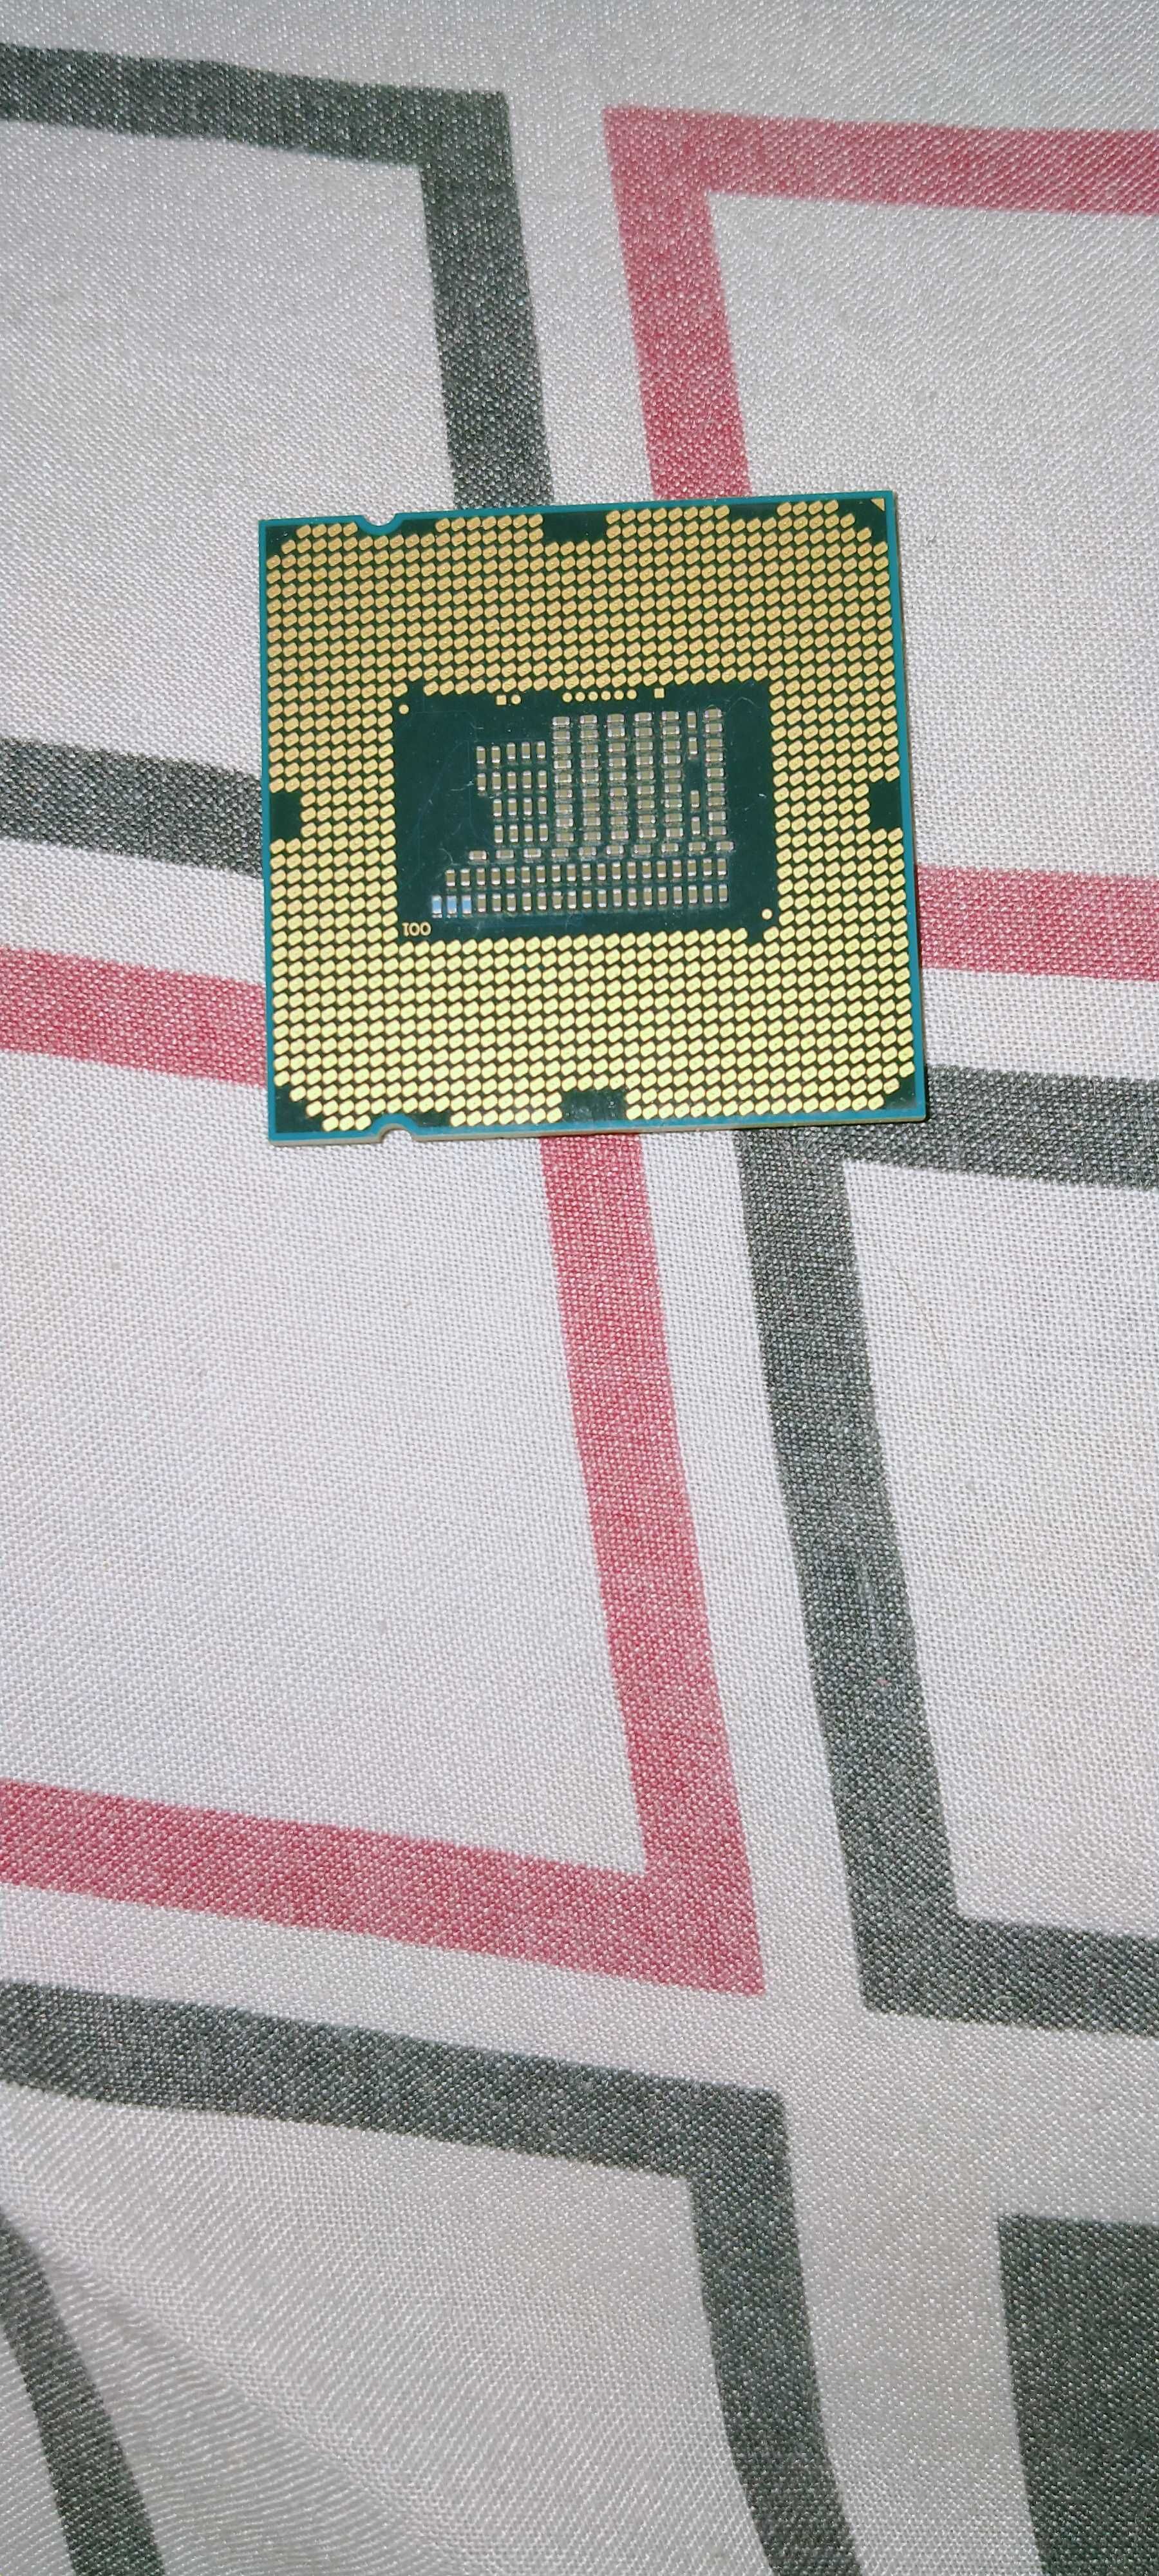 Процессор intel core